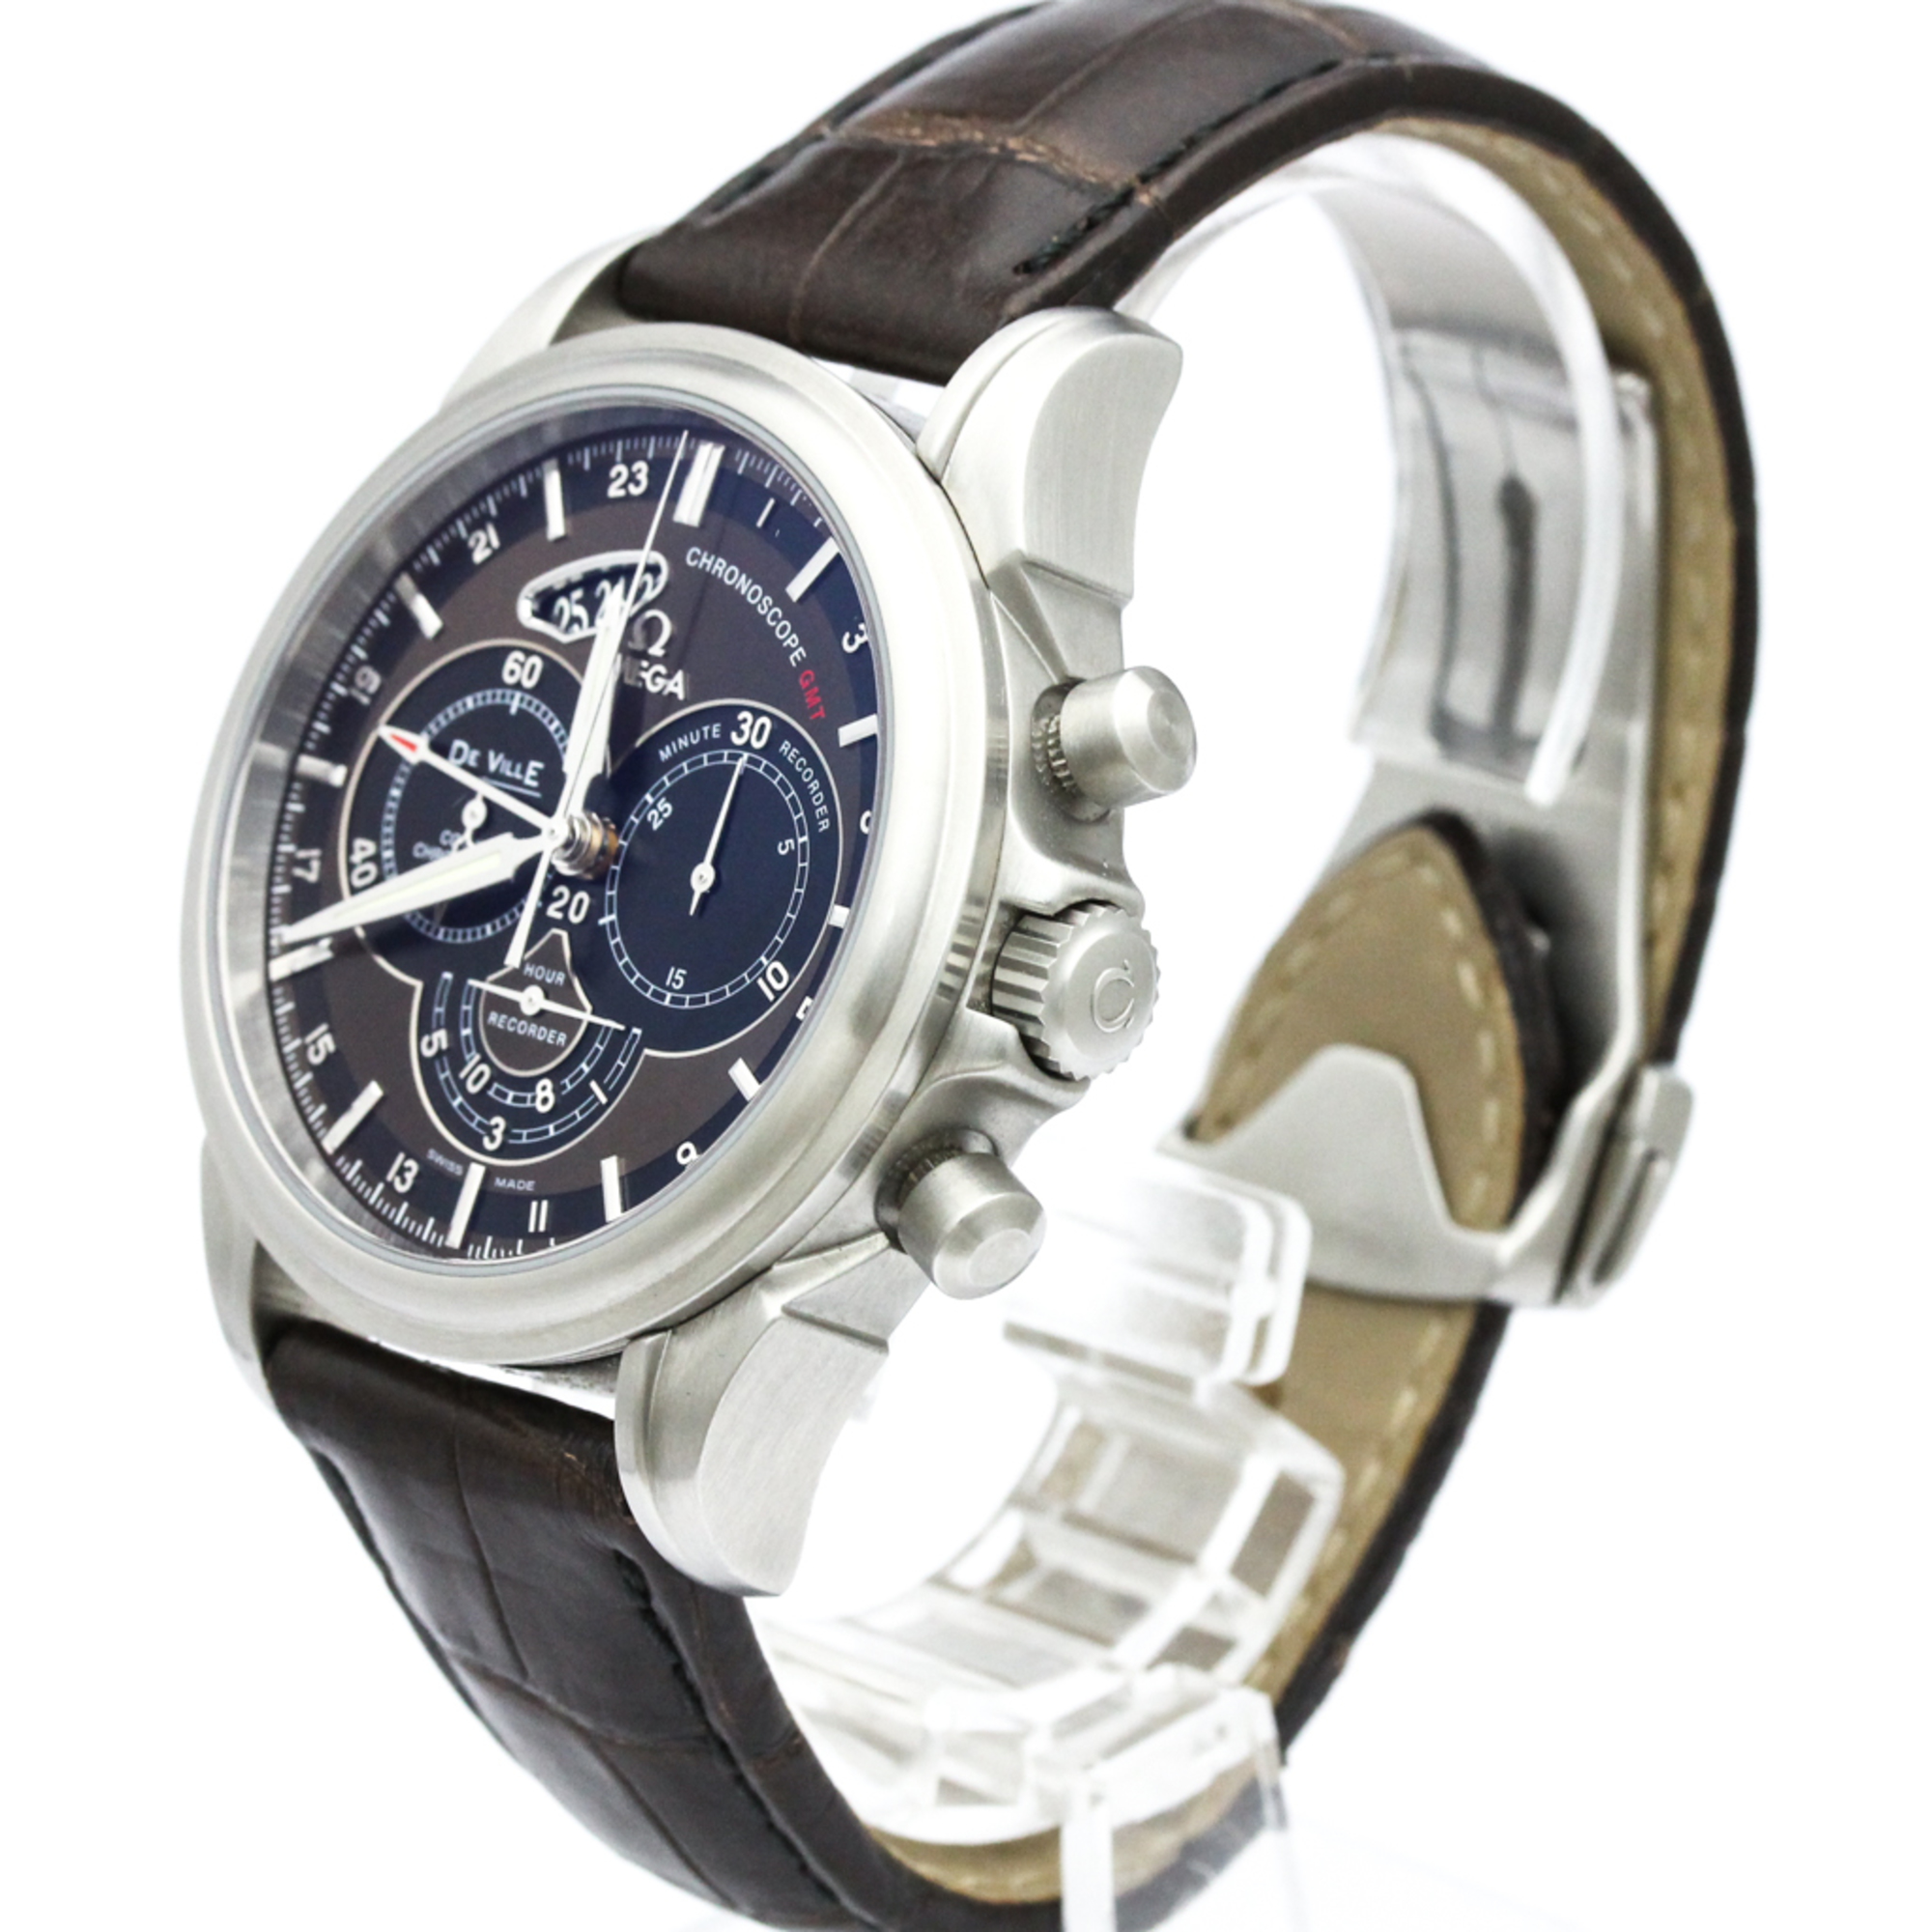 OMEGA De Ville Chronoscope CO-Axial GMT Watch 422.13.44.52.13.001